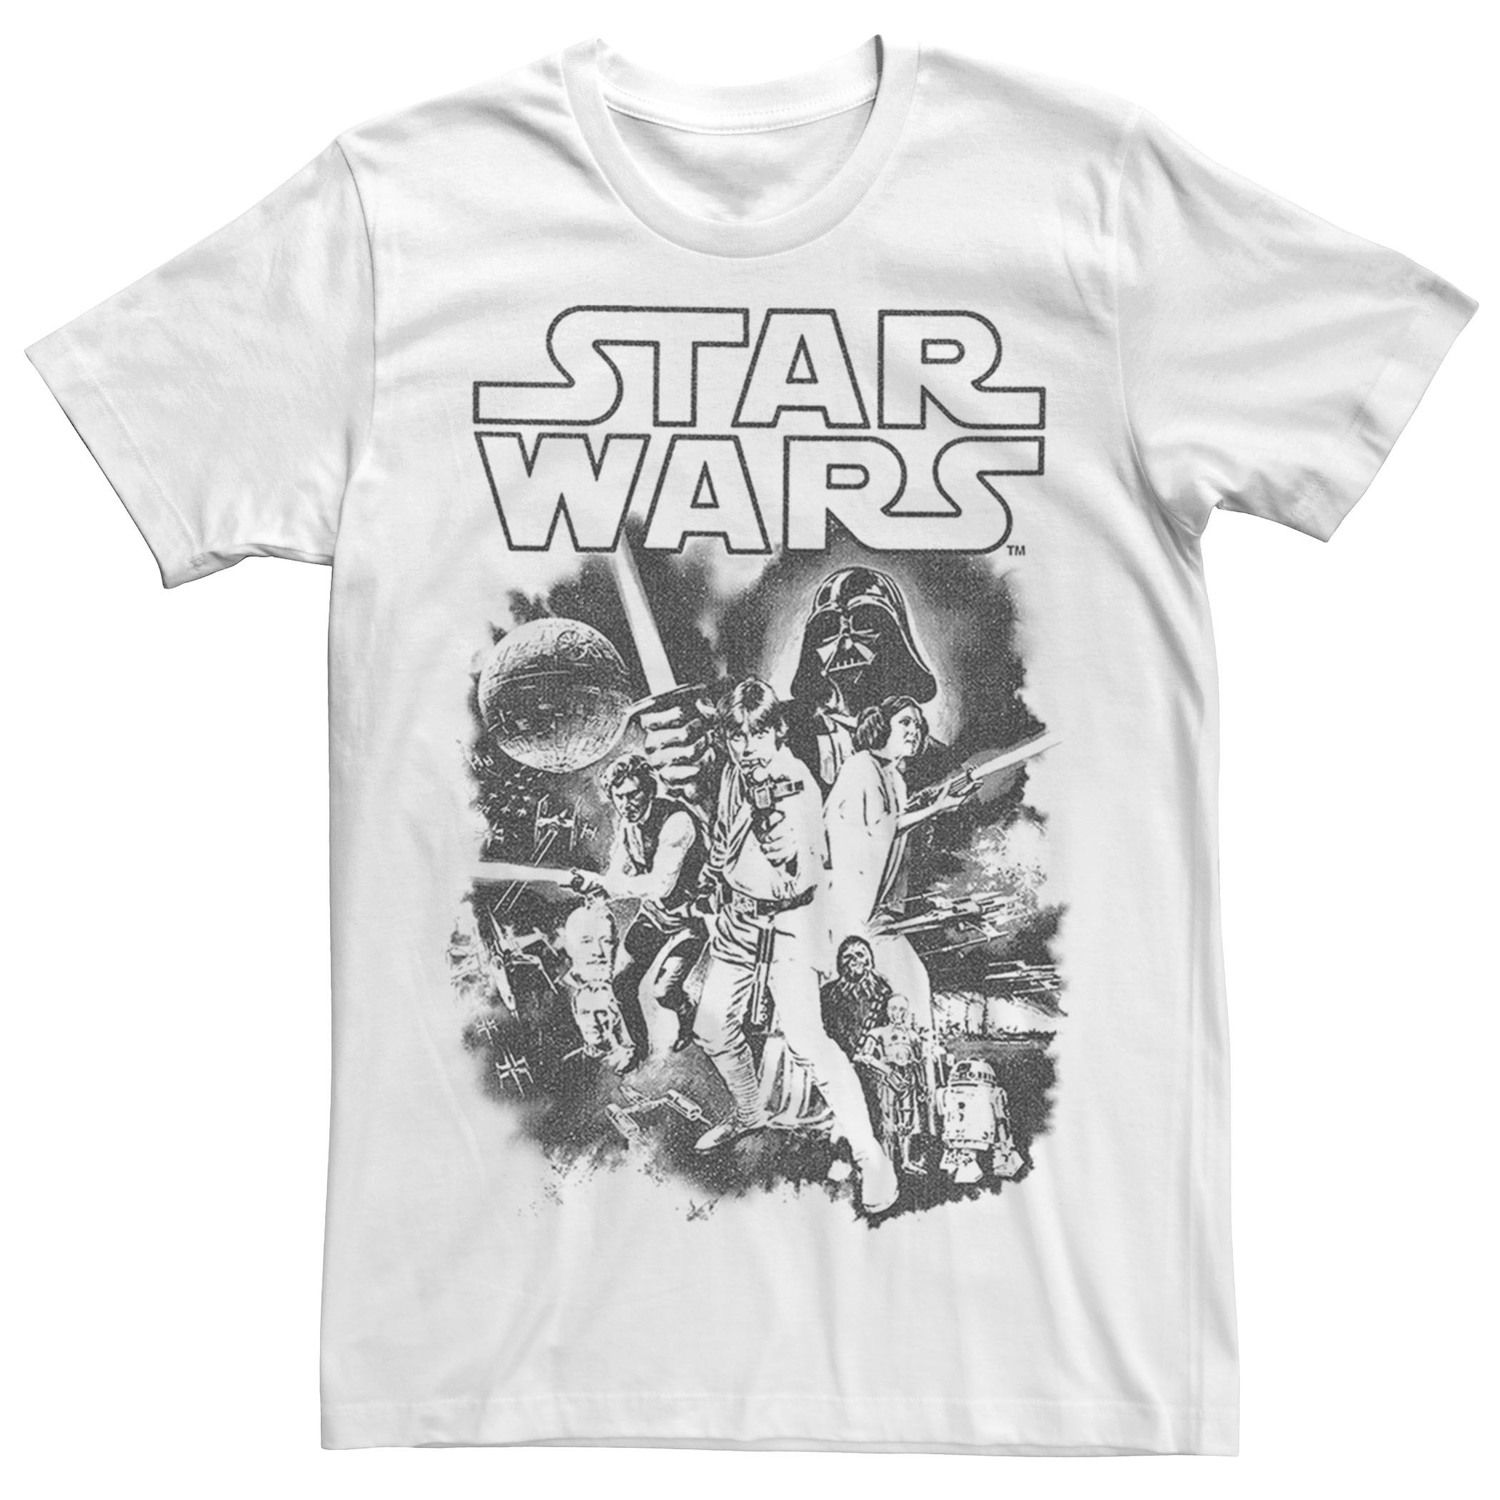 

Мужская классическая футболка с плакатом для группы «Звездные войны» Star Wars